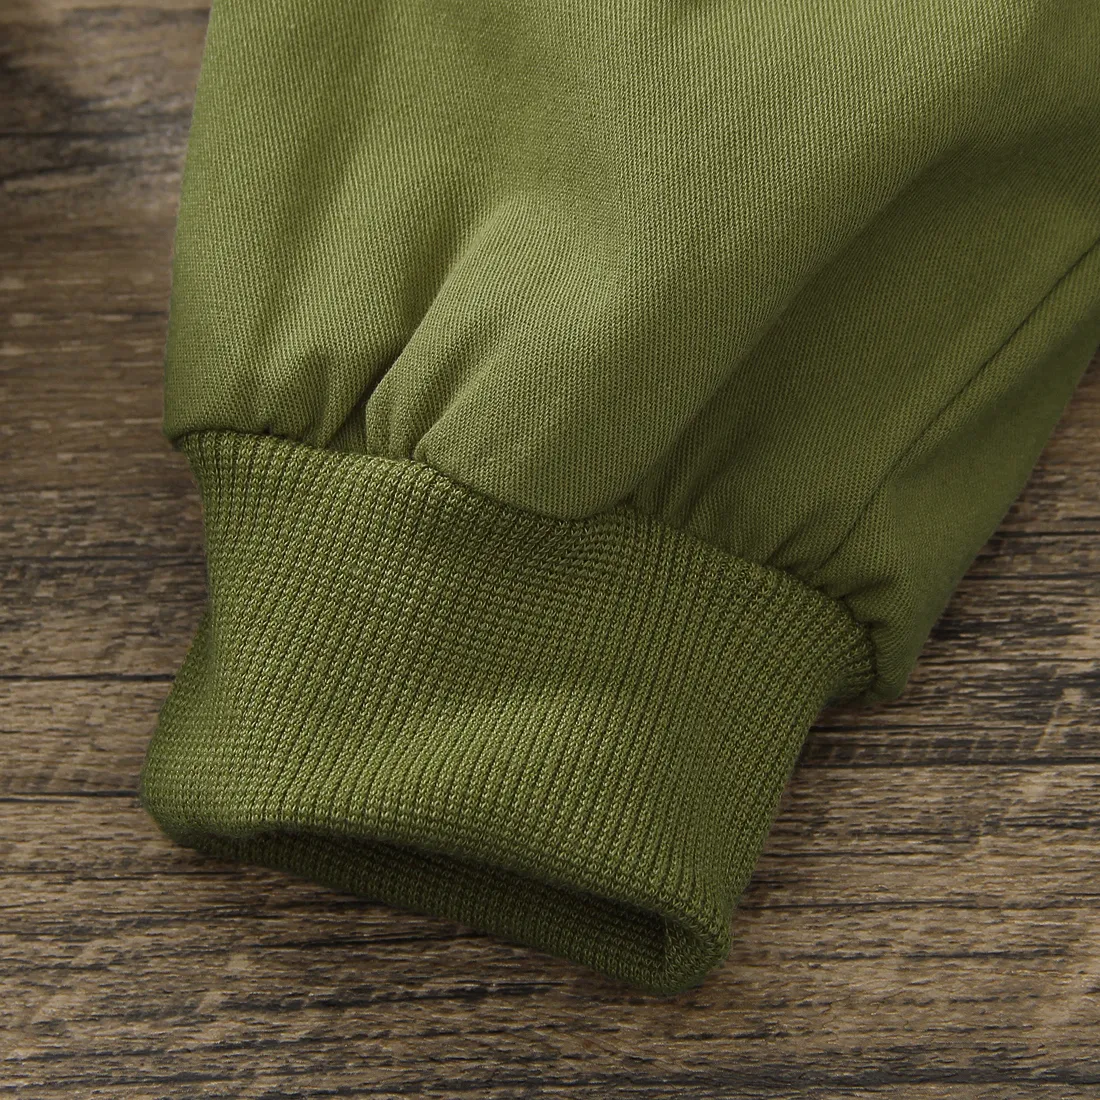 pantalones de color caqui con diseño de bolsillo de moda para niños pequeños Ejercito verde big image 1